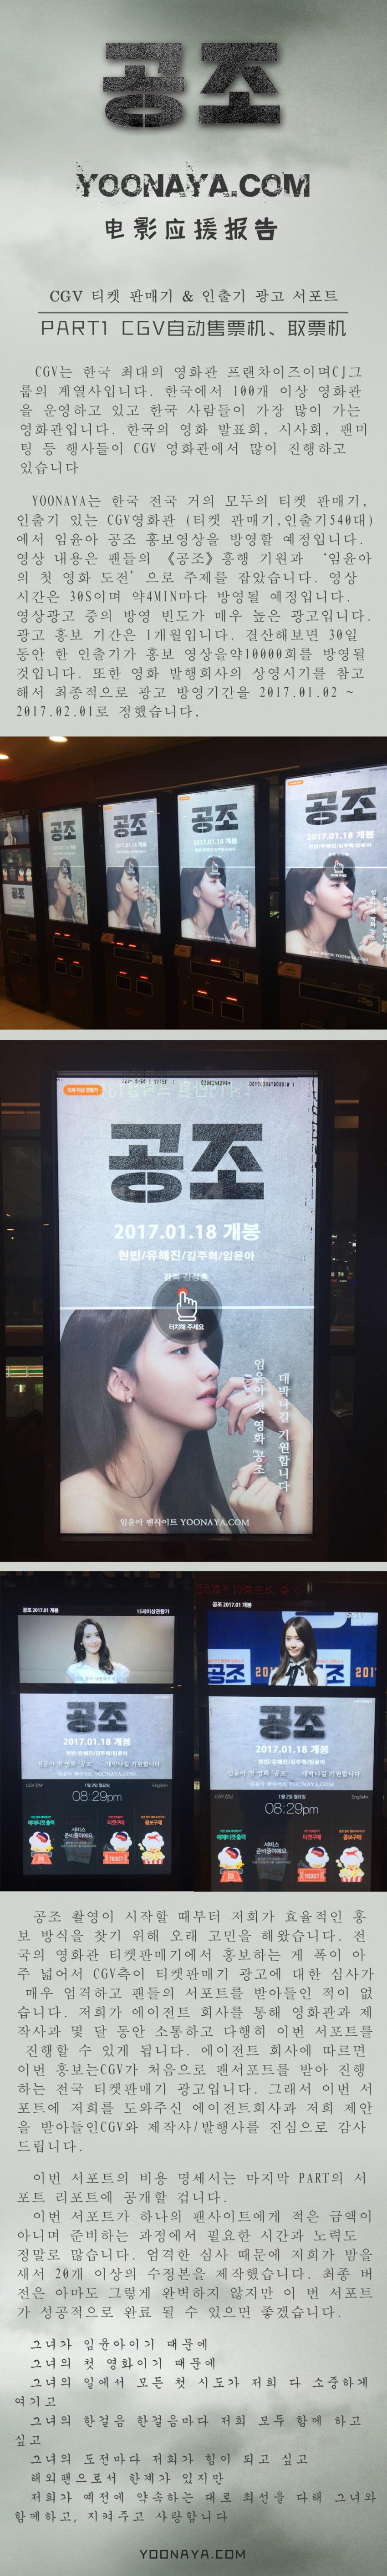 윤아 중국팬들 전국 CGV 티켓 판매기와 인출기 광고 서포트